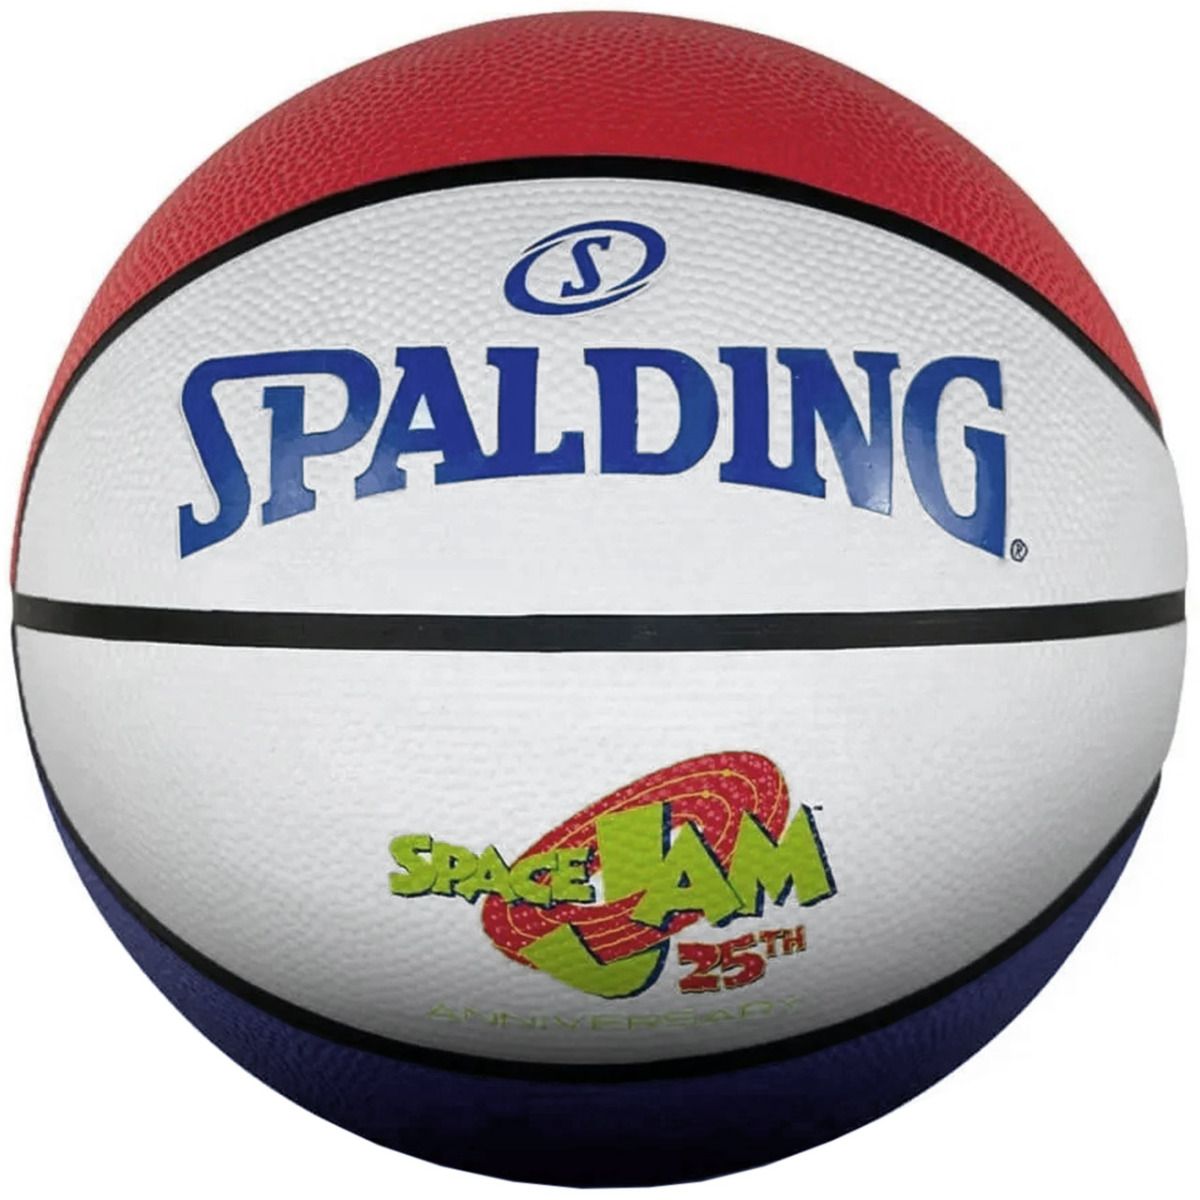 Spalding Basketbalová lopta Space Jam 25Th Anniversary 84687Z